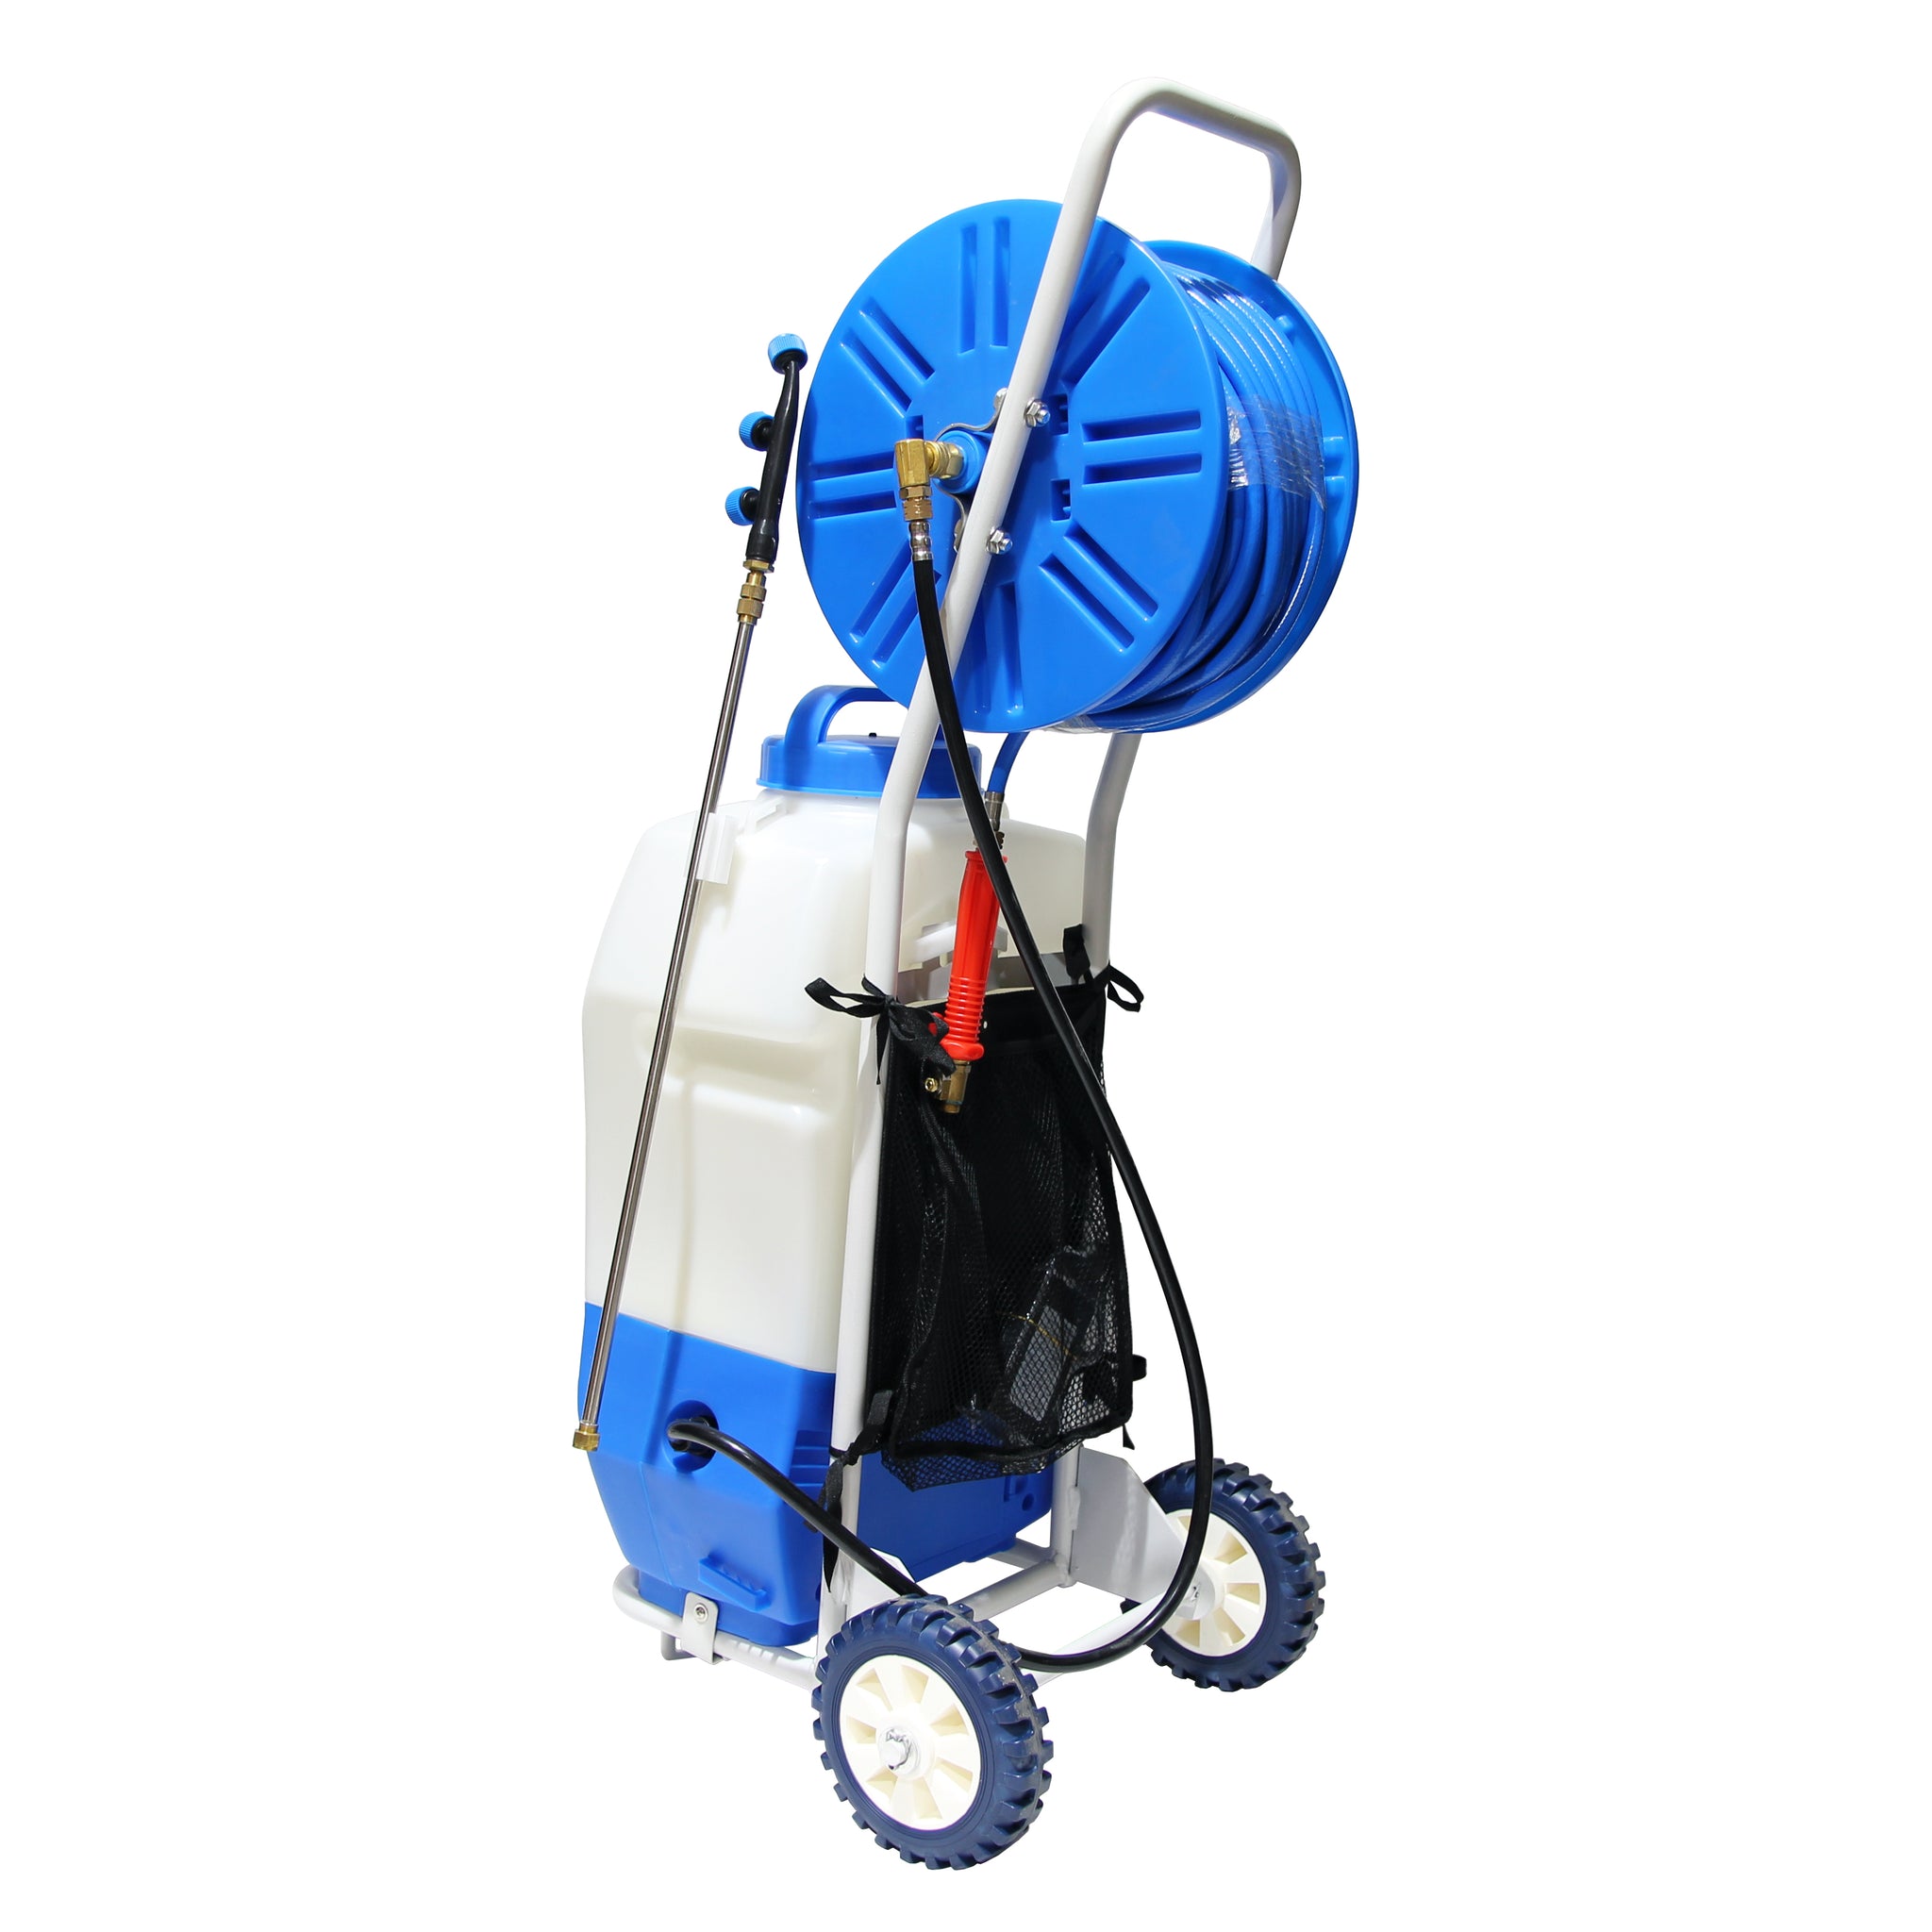 Chariot à réservoir de pulvérisation d'eau Aquaspray Pro 20 L